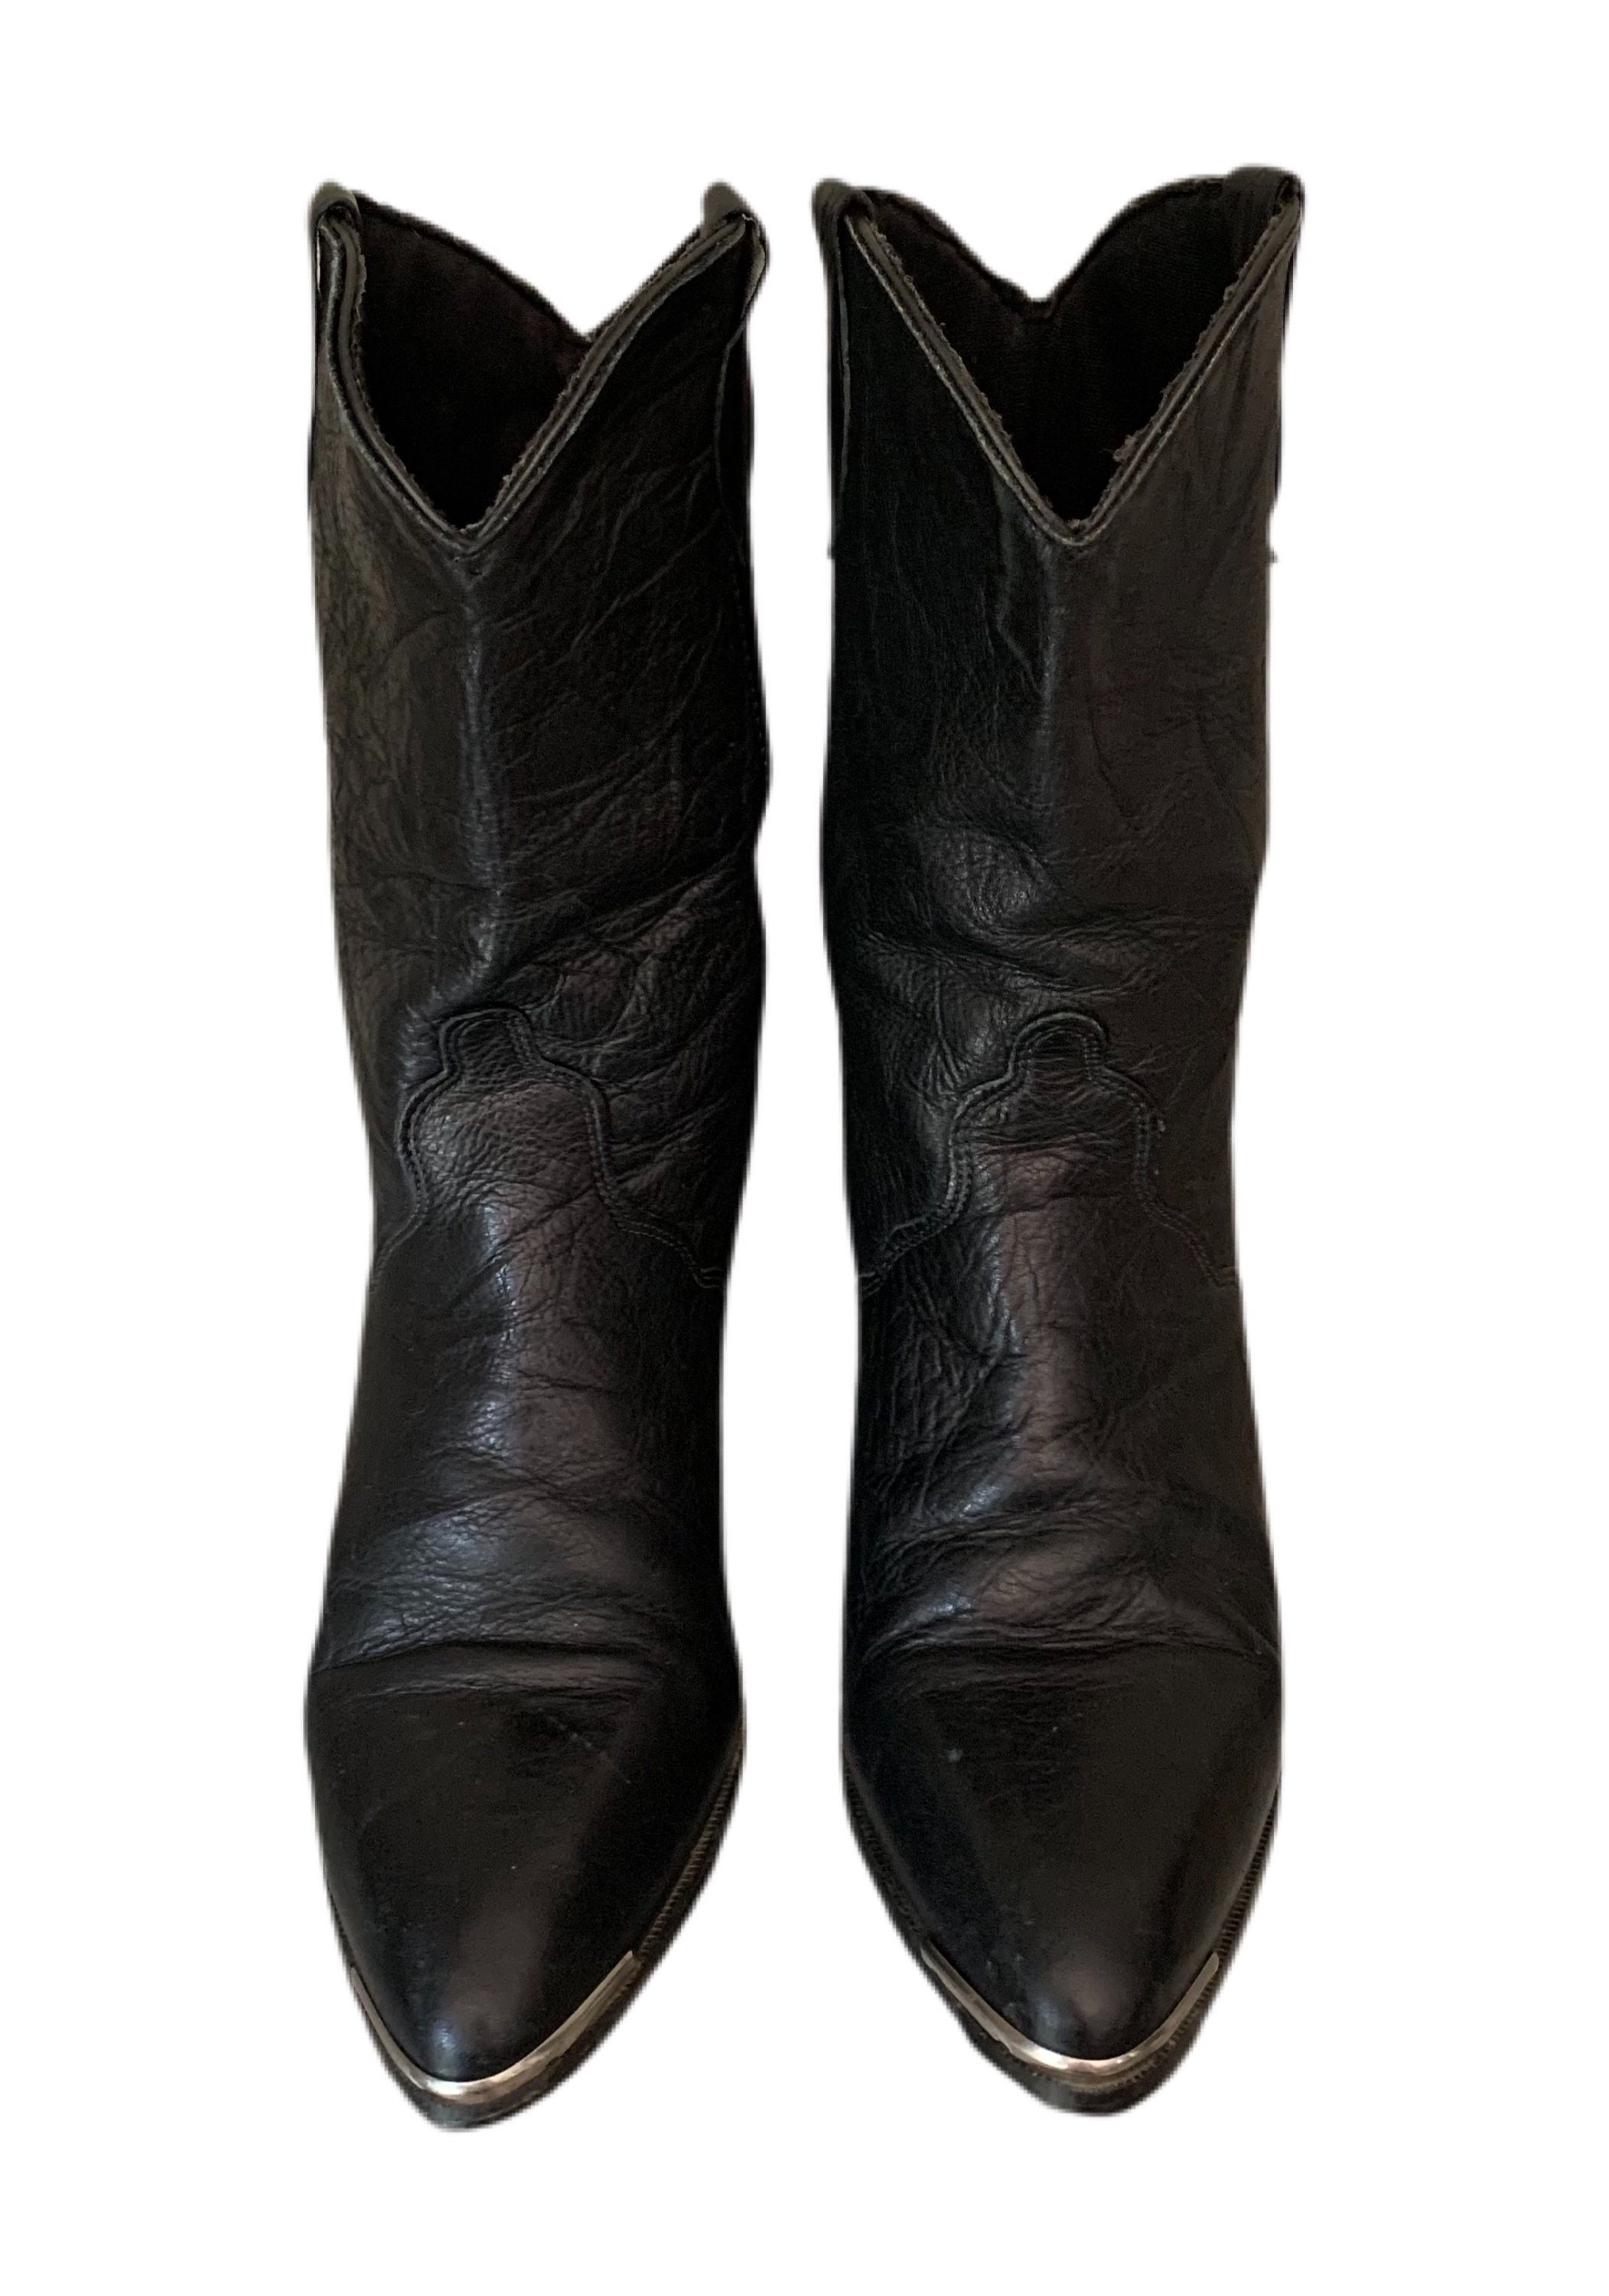 Dingo Cowboy Boots Vintage 80s Black Dingo Cowgirl Boots | Etsy